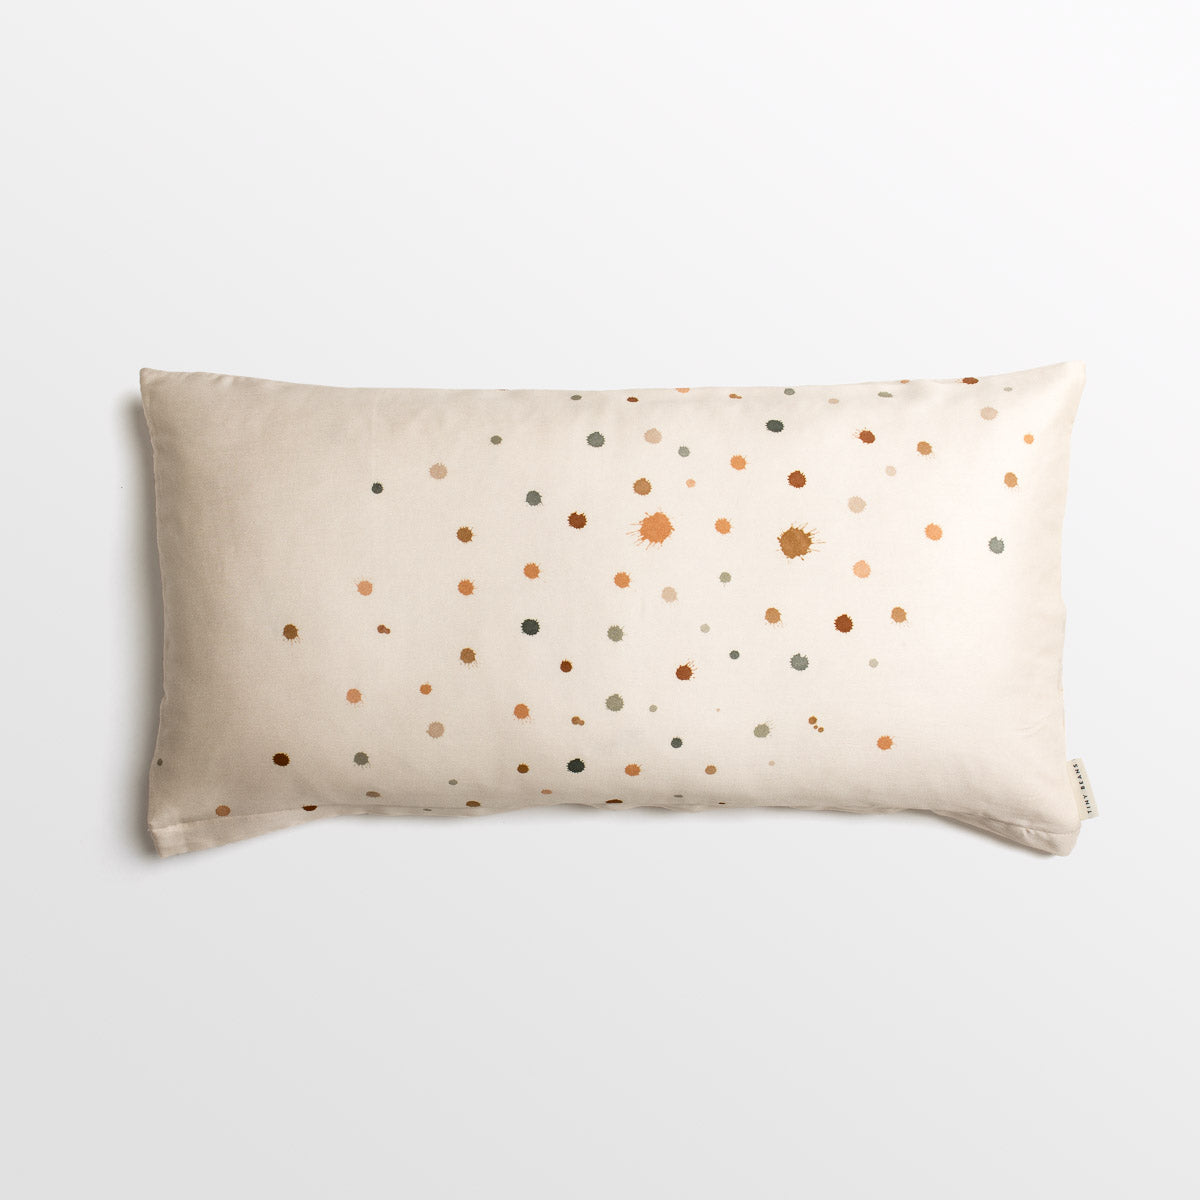 Pillowcase - Confetti, 40 x 80cm